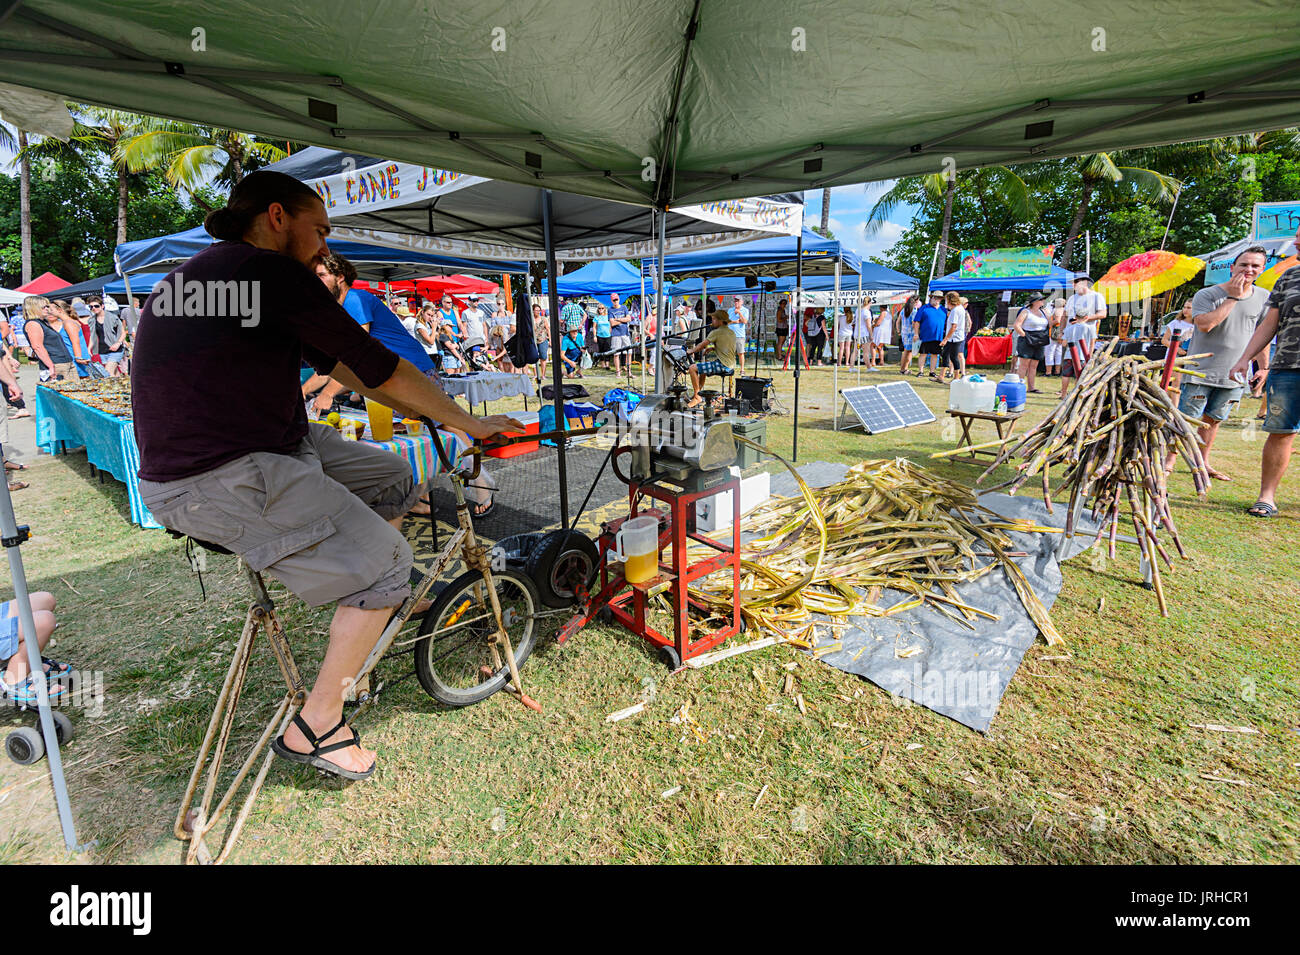 La canne à sucre par concassage masculins de la bicyclette au marchés du dimanche, Port Douglas, Far North Queensland, Queensland, Australie, FNQ Banque D'Images